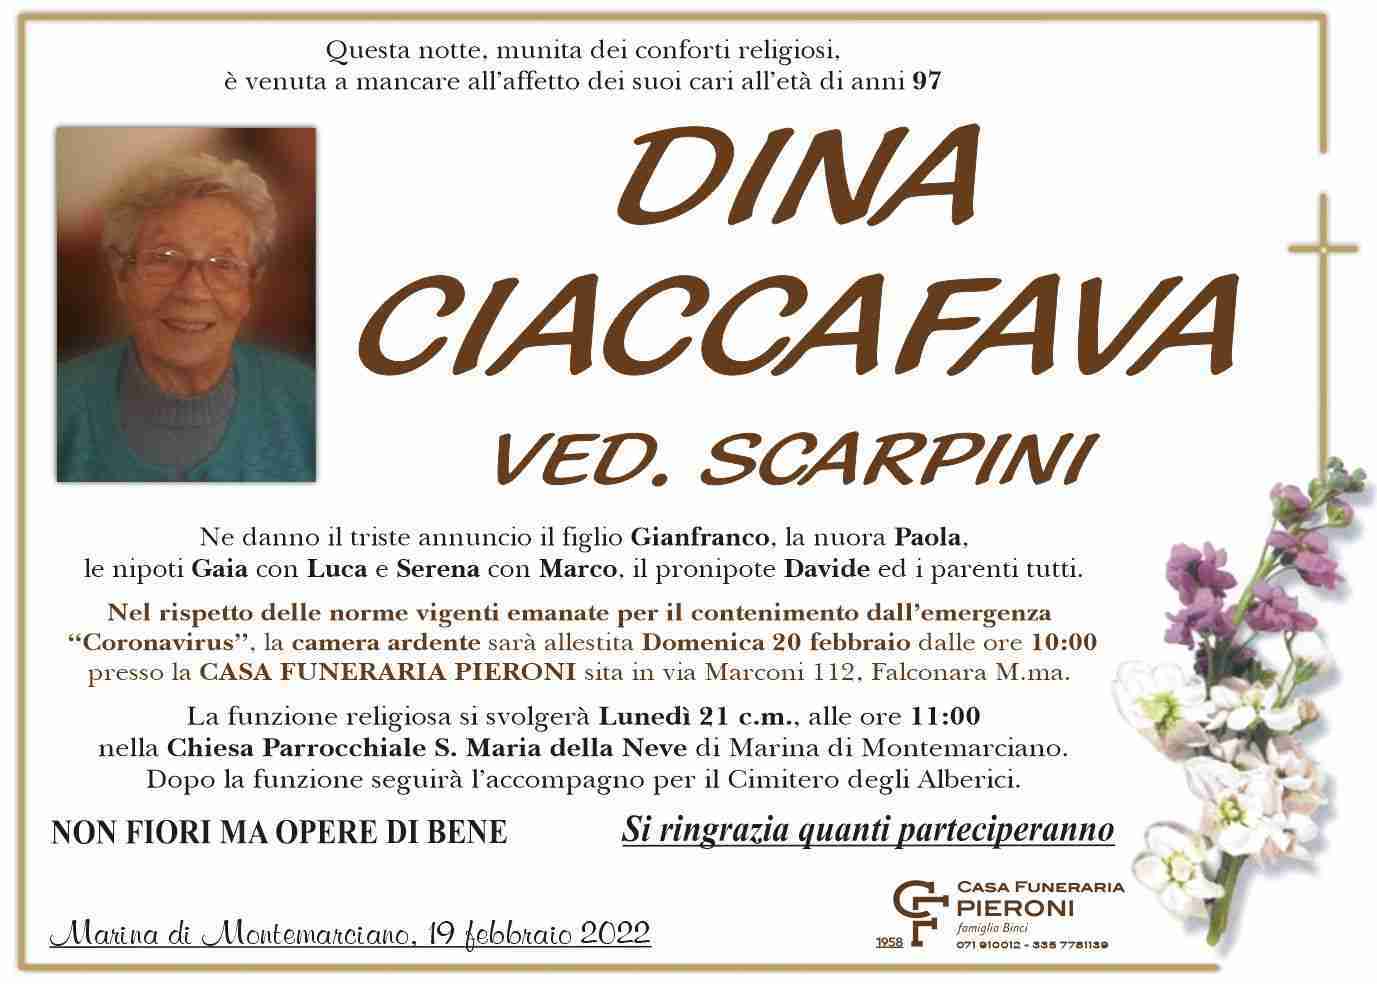 Dina Ciaccafava